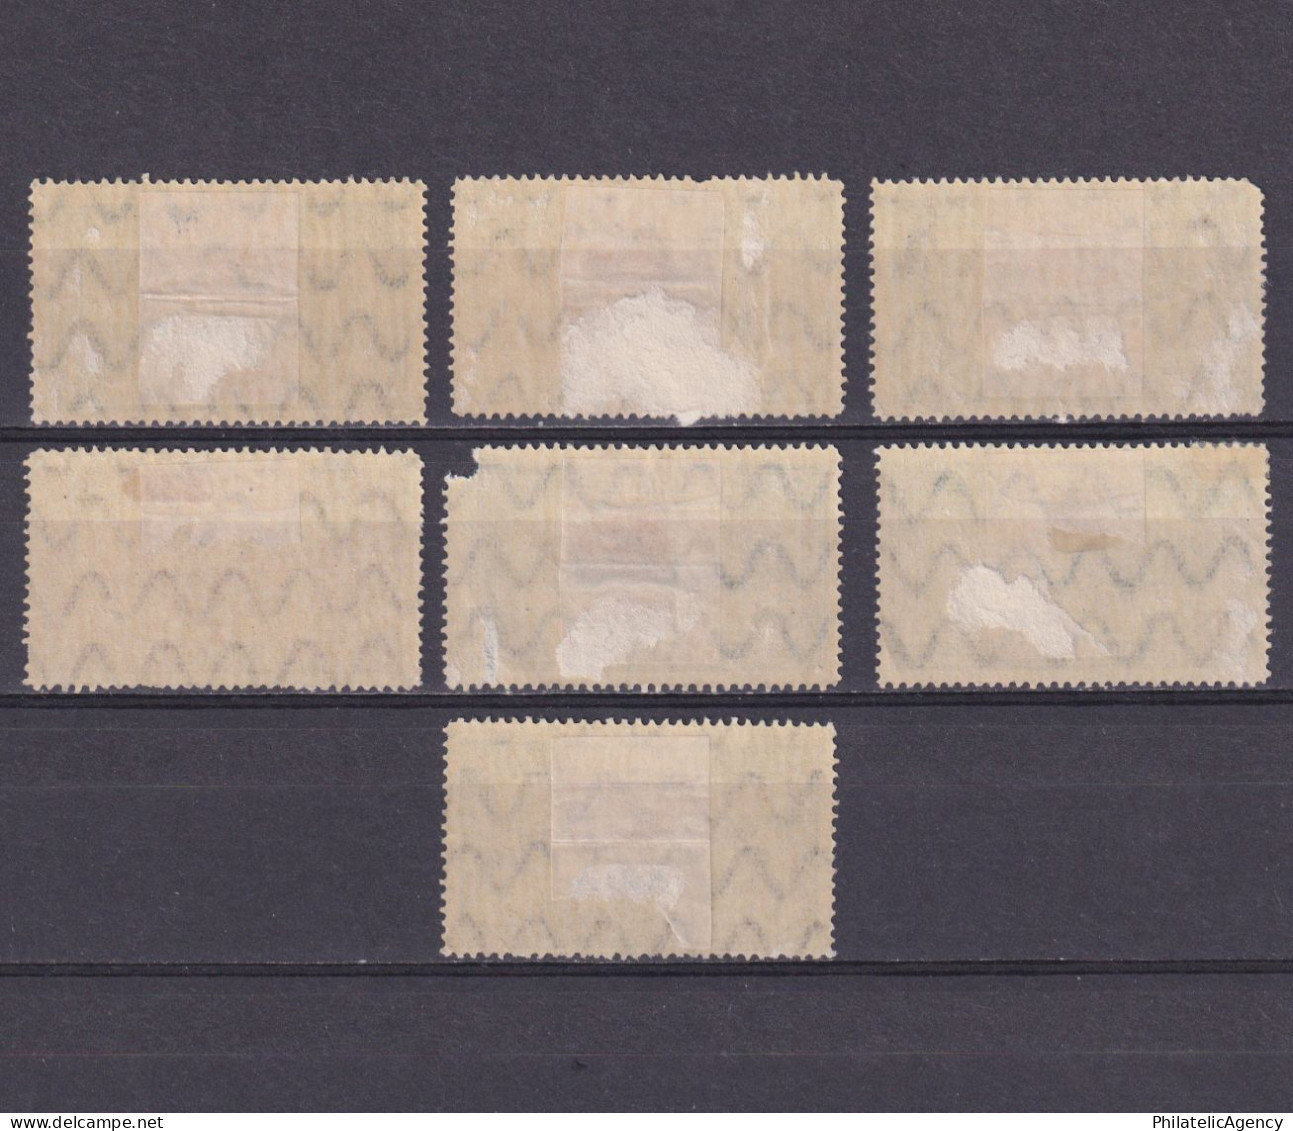 ROMANIA 1928, Sc# 329-335, CV $22, Bessarabia, MH - Unused Stamps